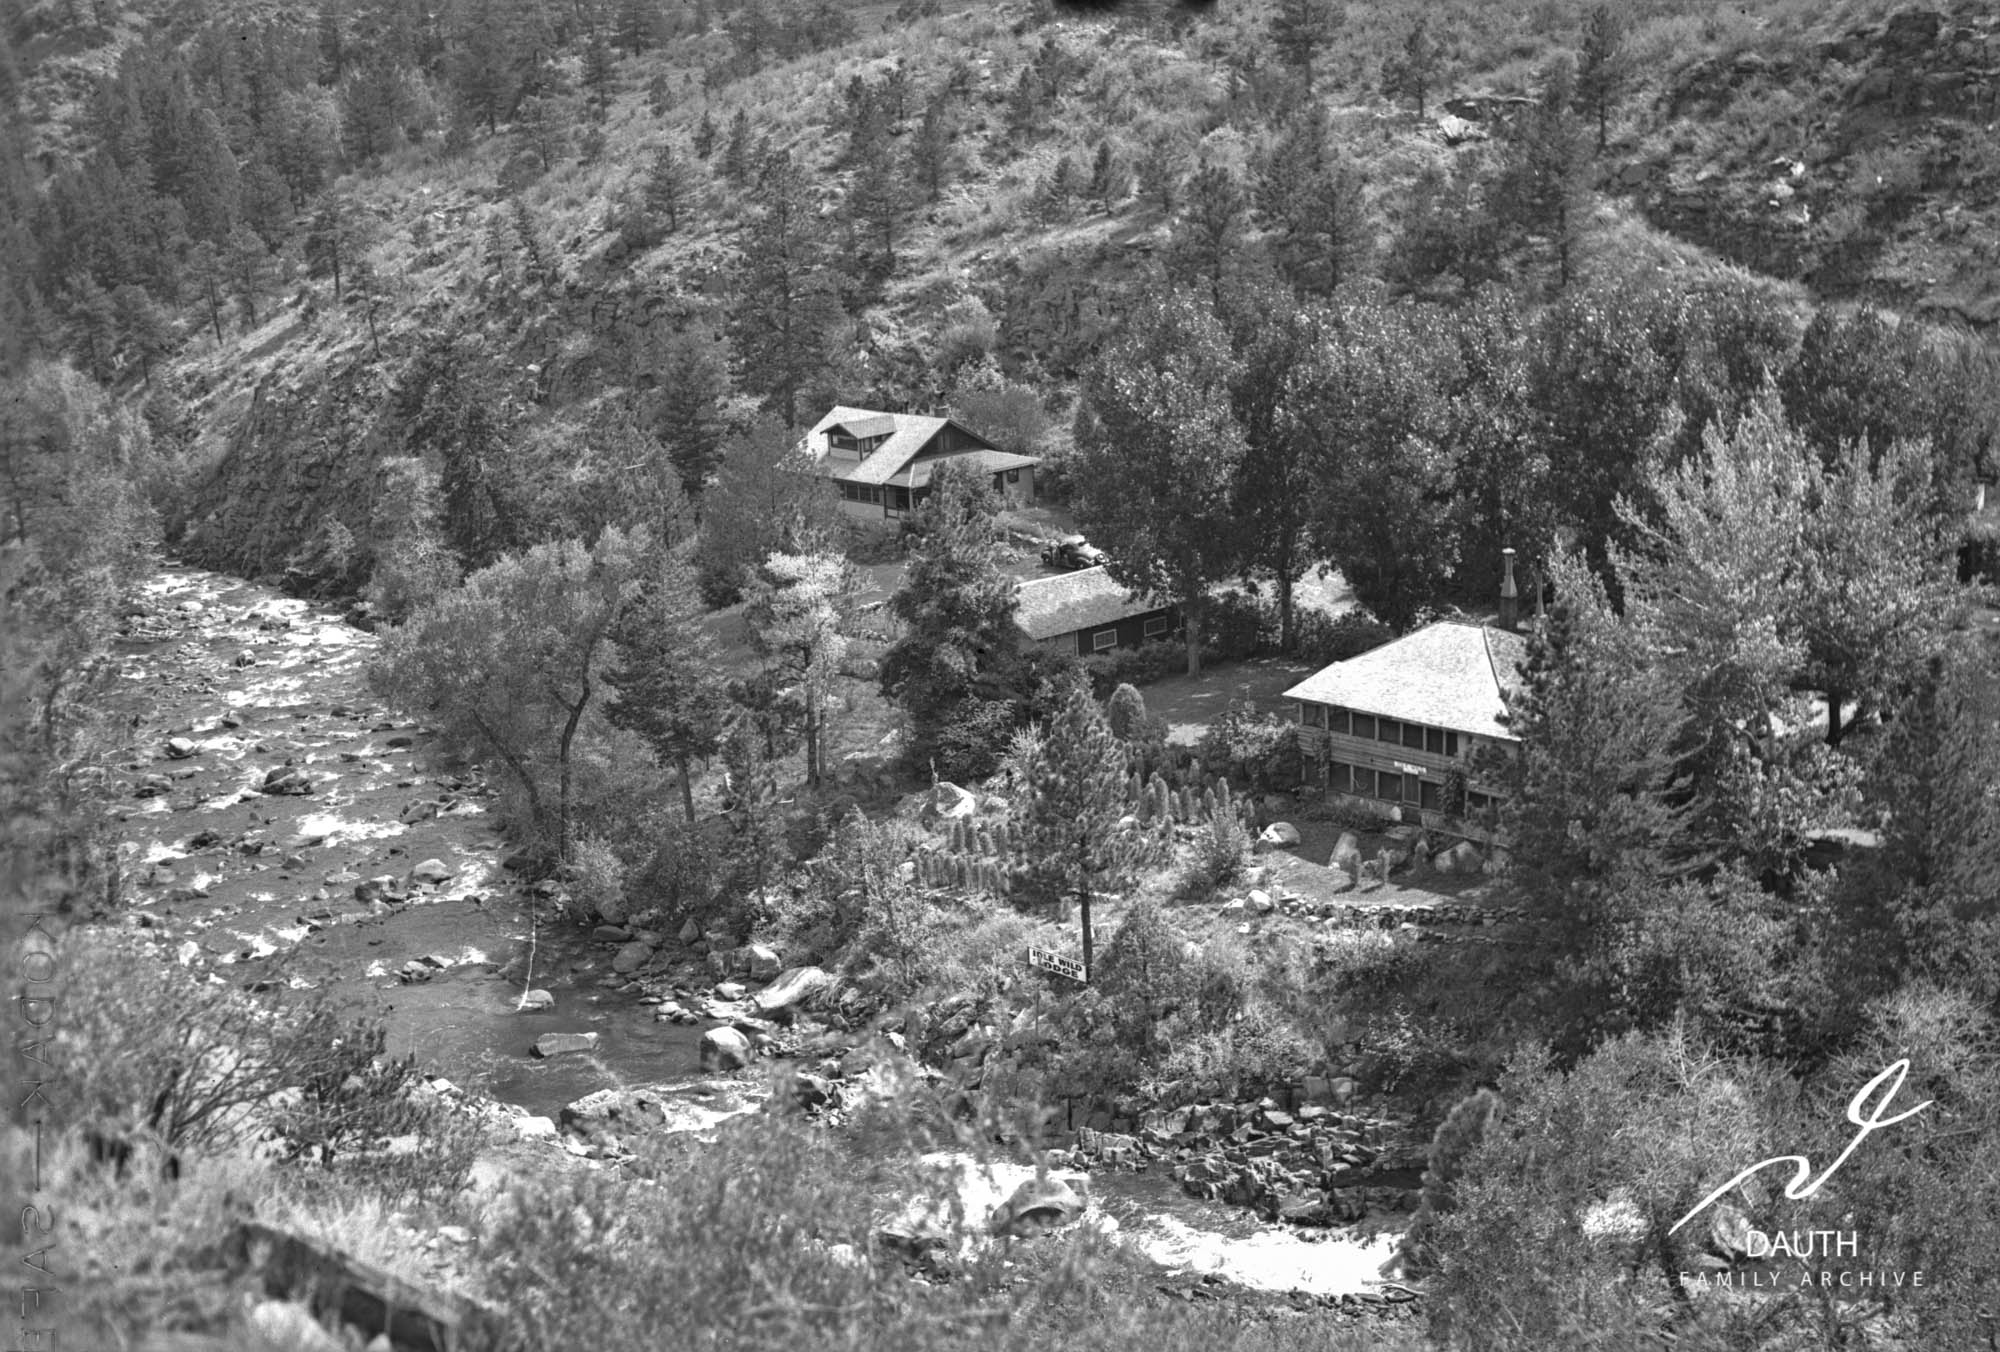 Idlewild Lodge - idlewildlodge.github.io - Circa 1940 - Idlewild - Looking South At Idlewild Lodge, DAMFINO An